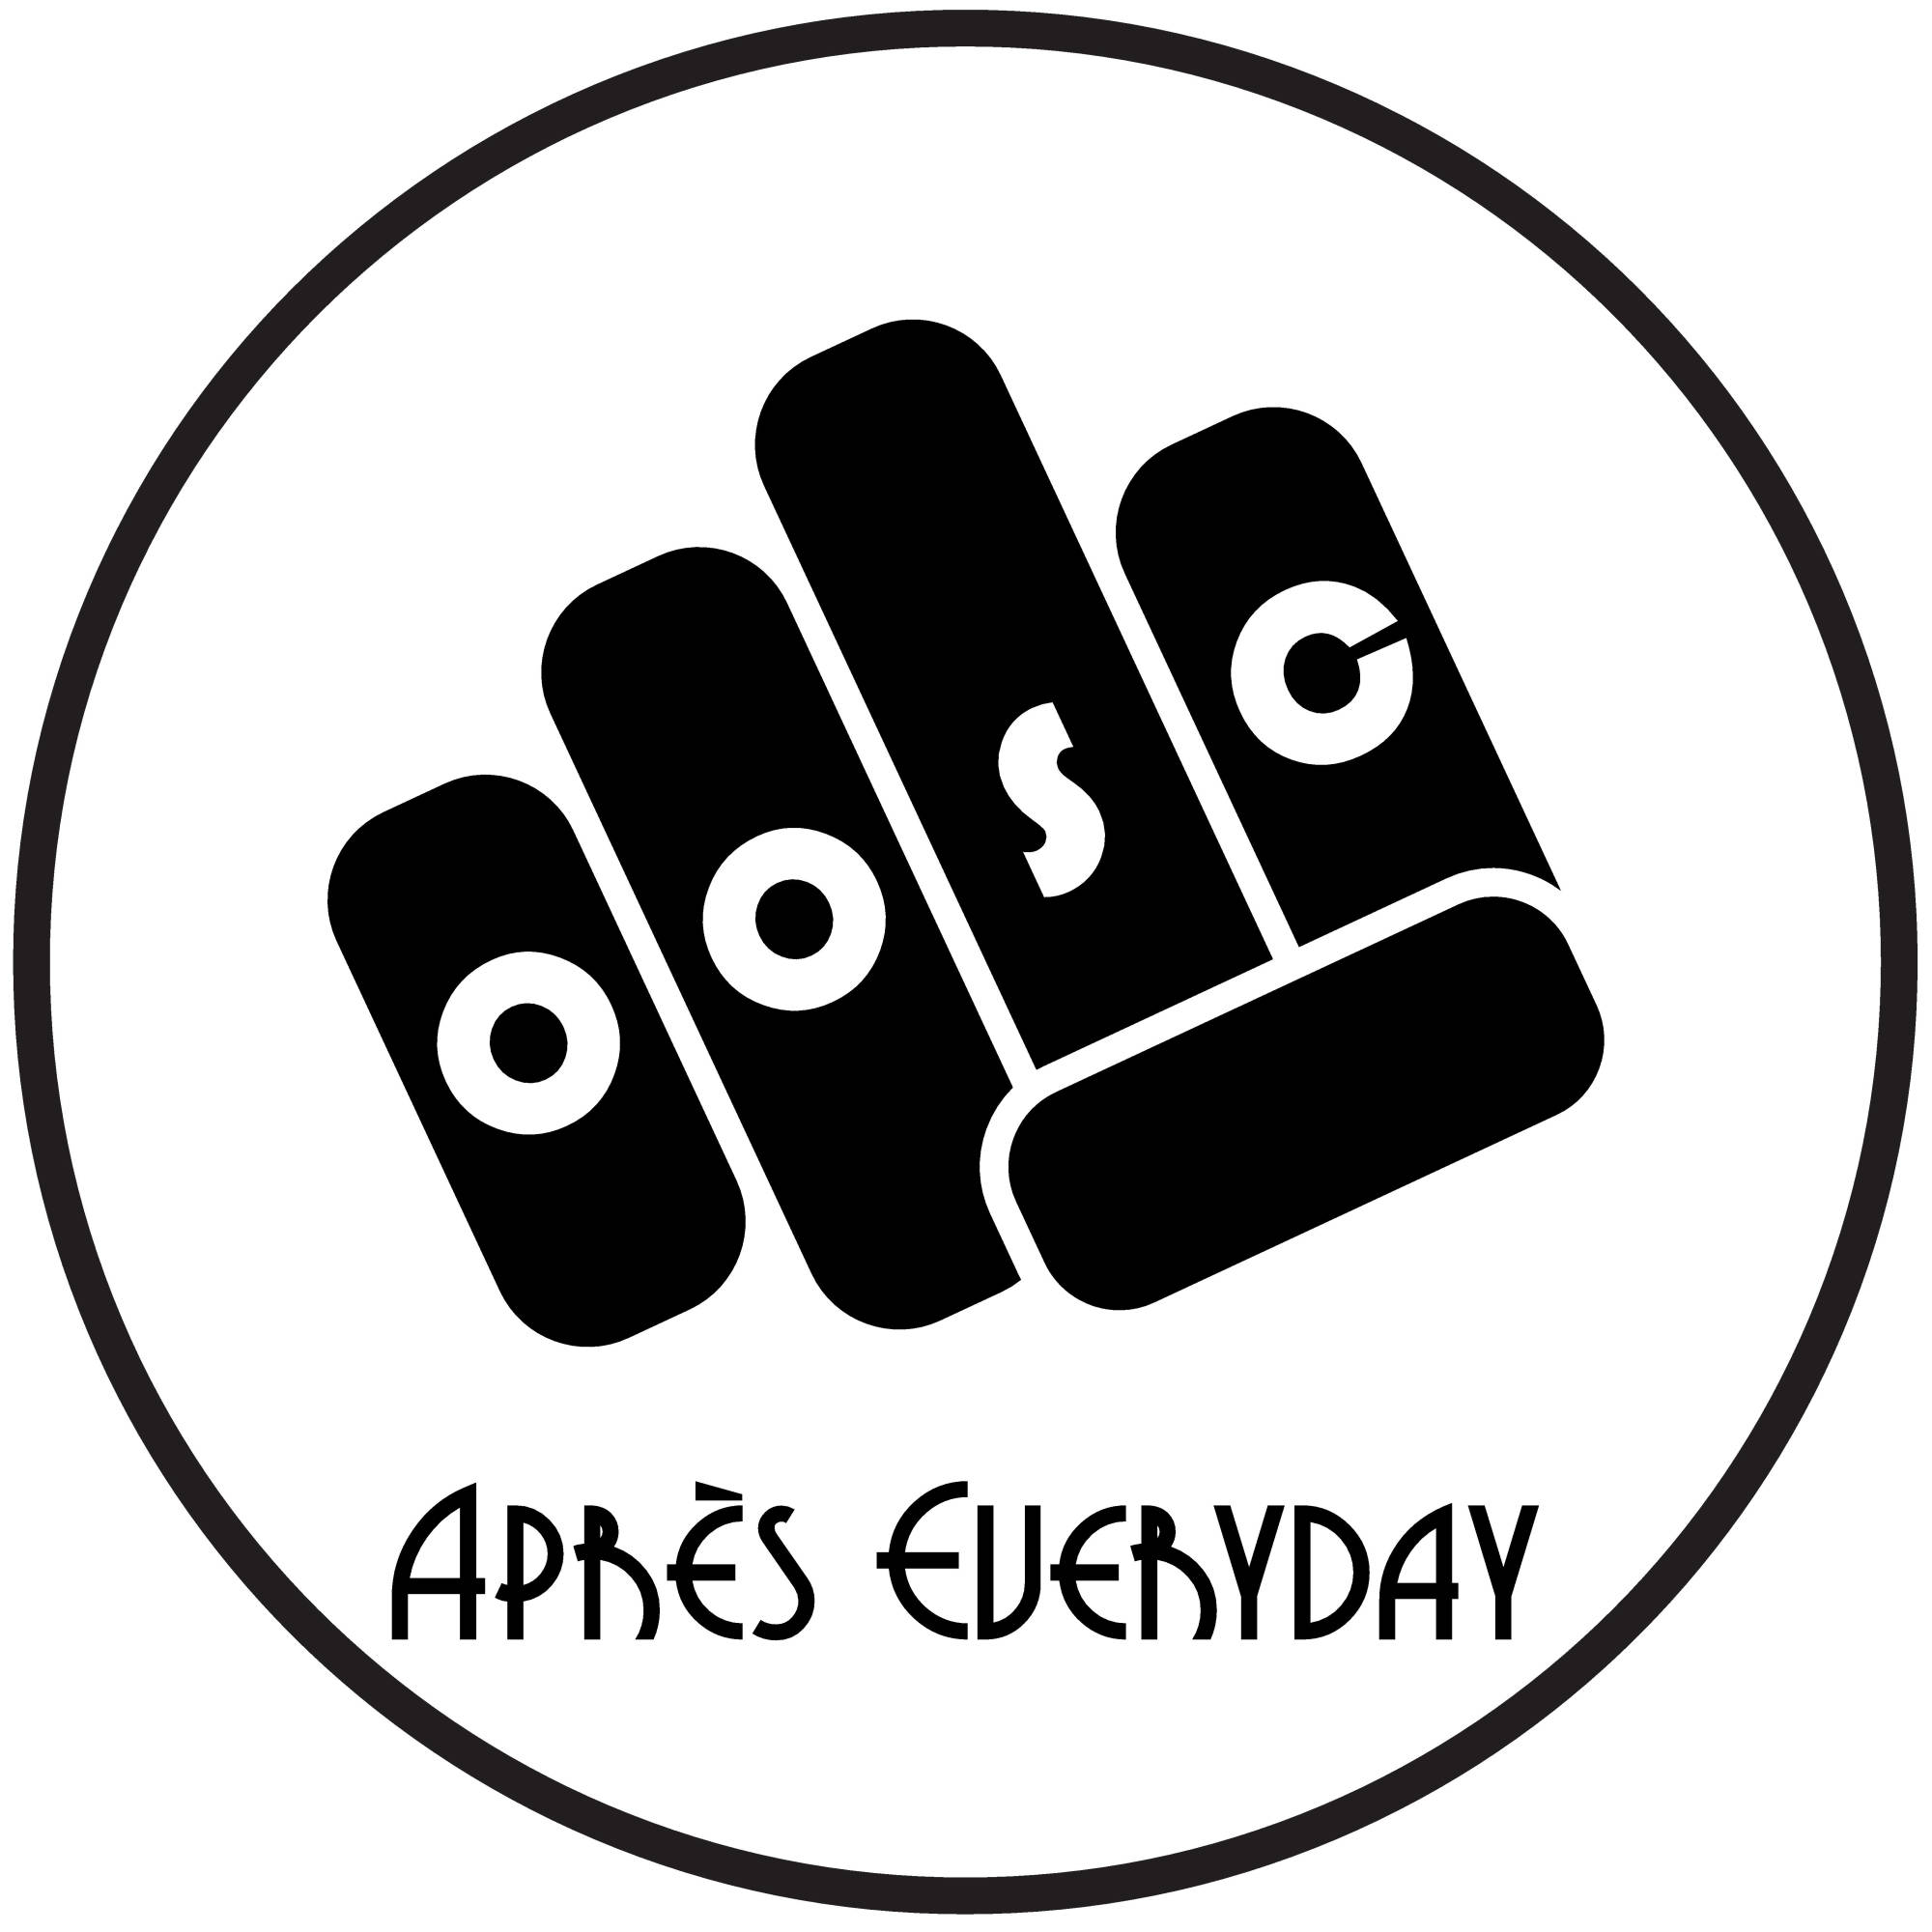 OOSC apres everyday logo